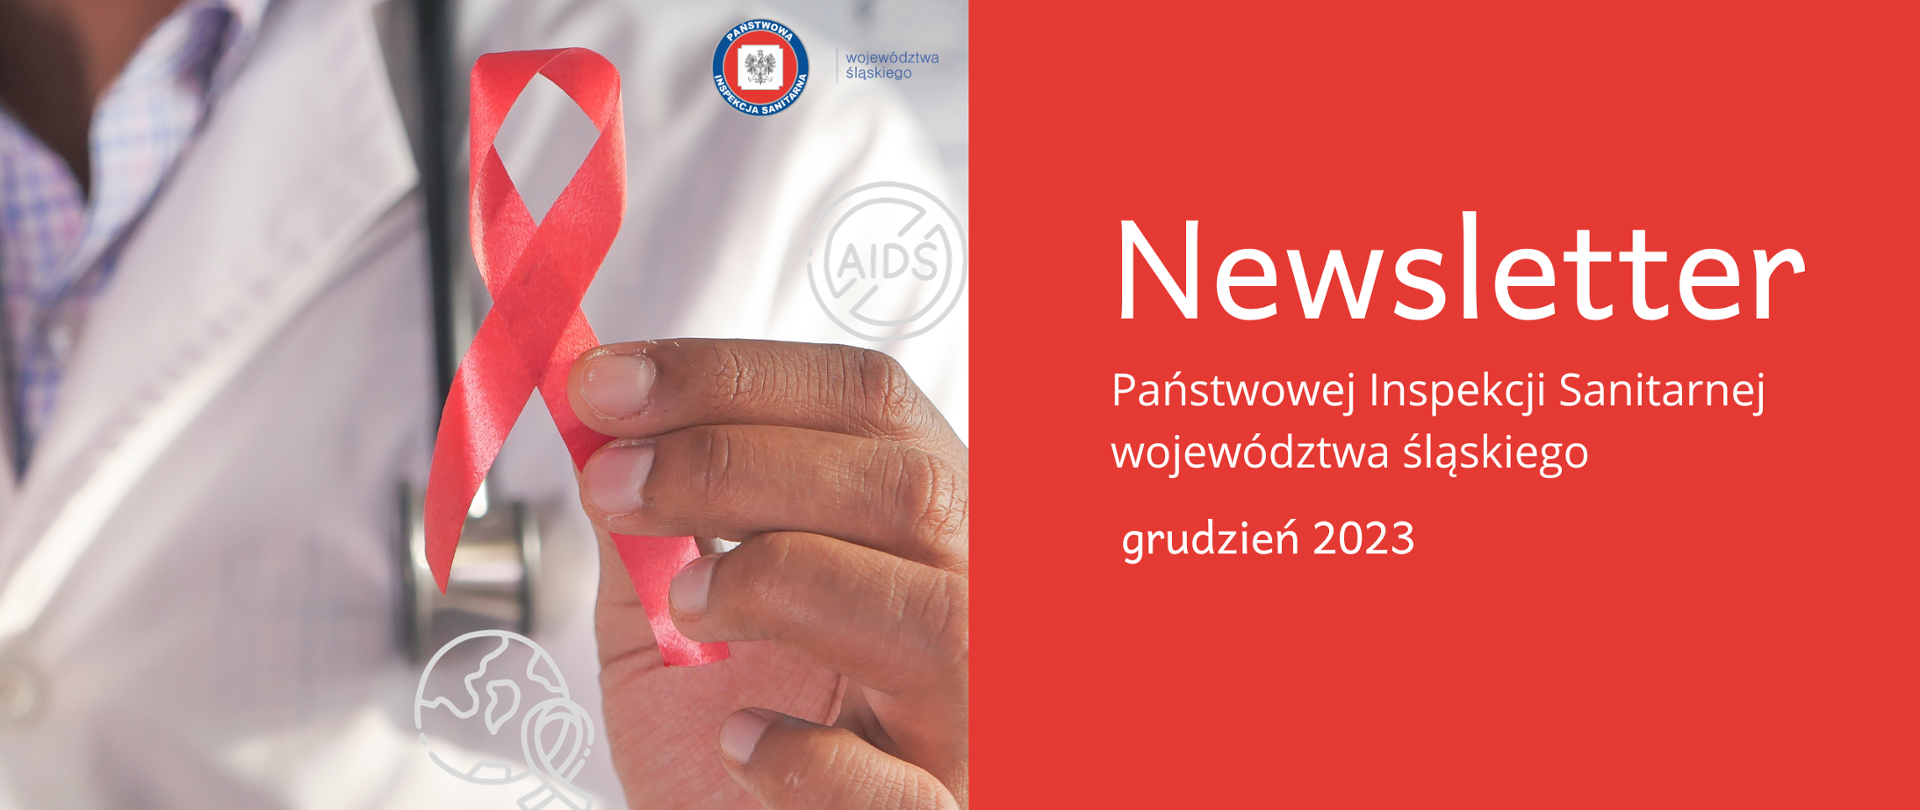 Lekarz trzymający w ręku czerwoną wstążeczkę - symbol solidarności z osobami chorującymi na AIDS, po prawej stronie na czerwonym tle napis "Newsletter Państwowej Inspekcji Sanitarnej województwa śląskiego" grudzień 2023